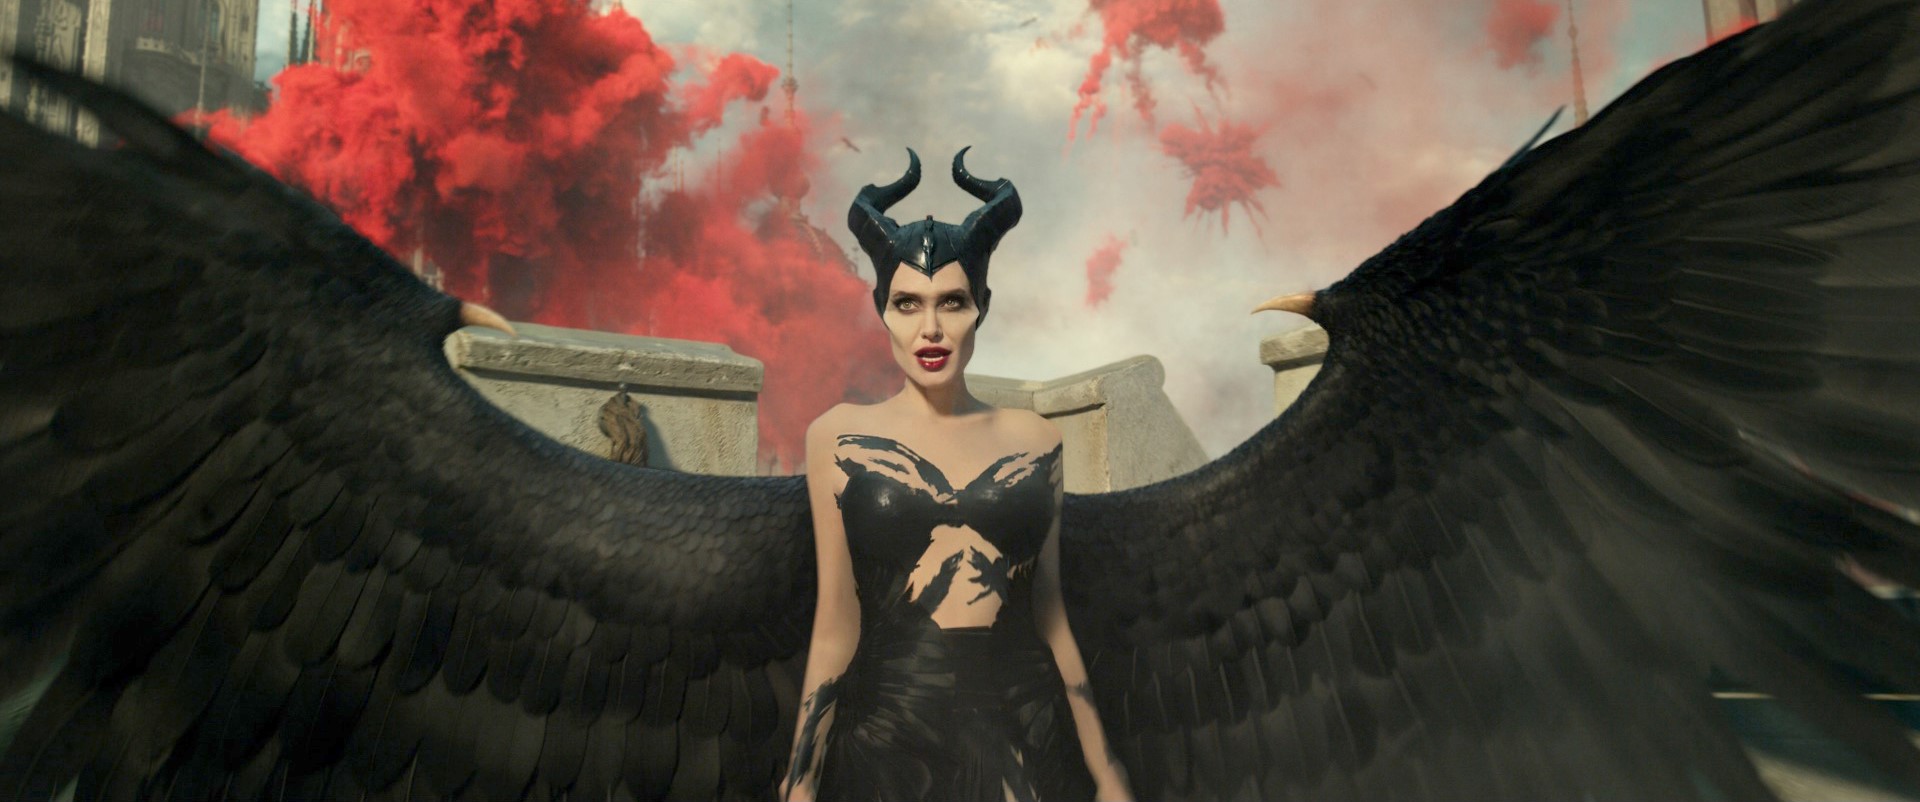 The El Capitan Theatre Presents Maleficent: Mistress Of Evil